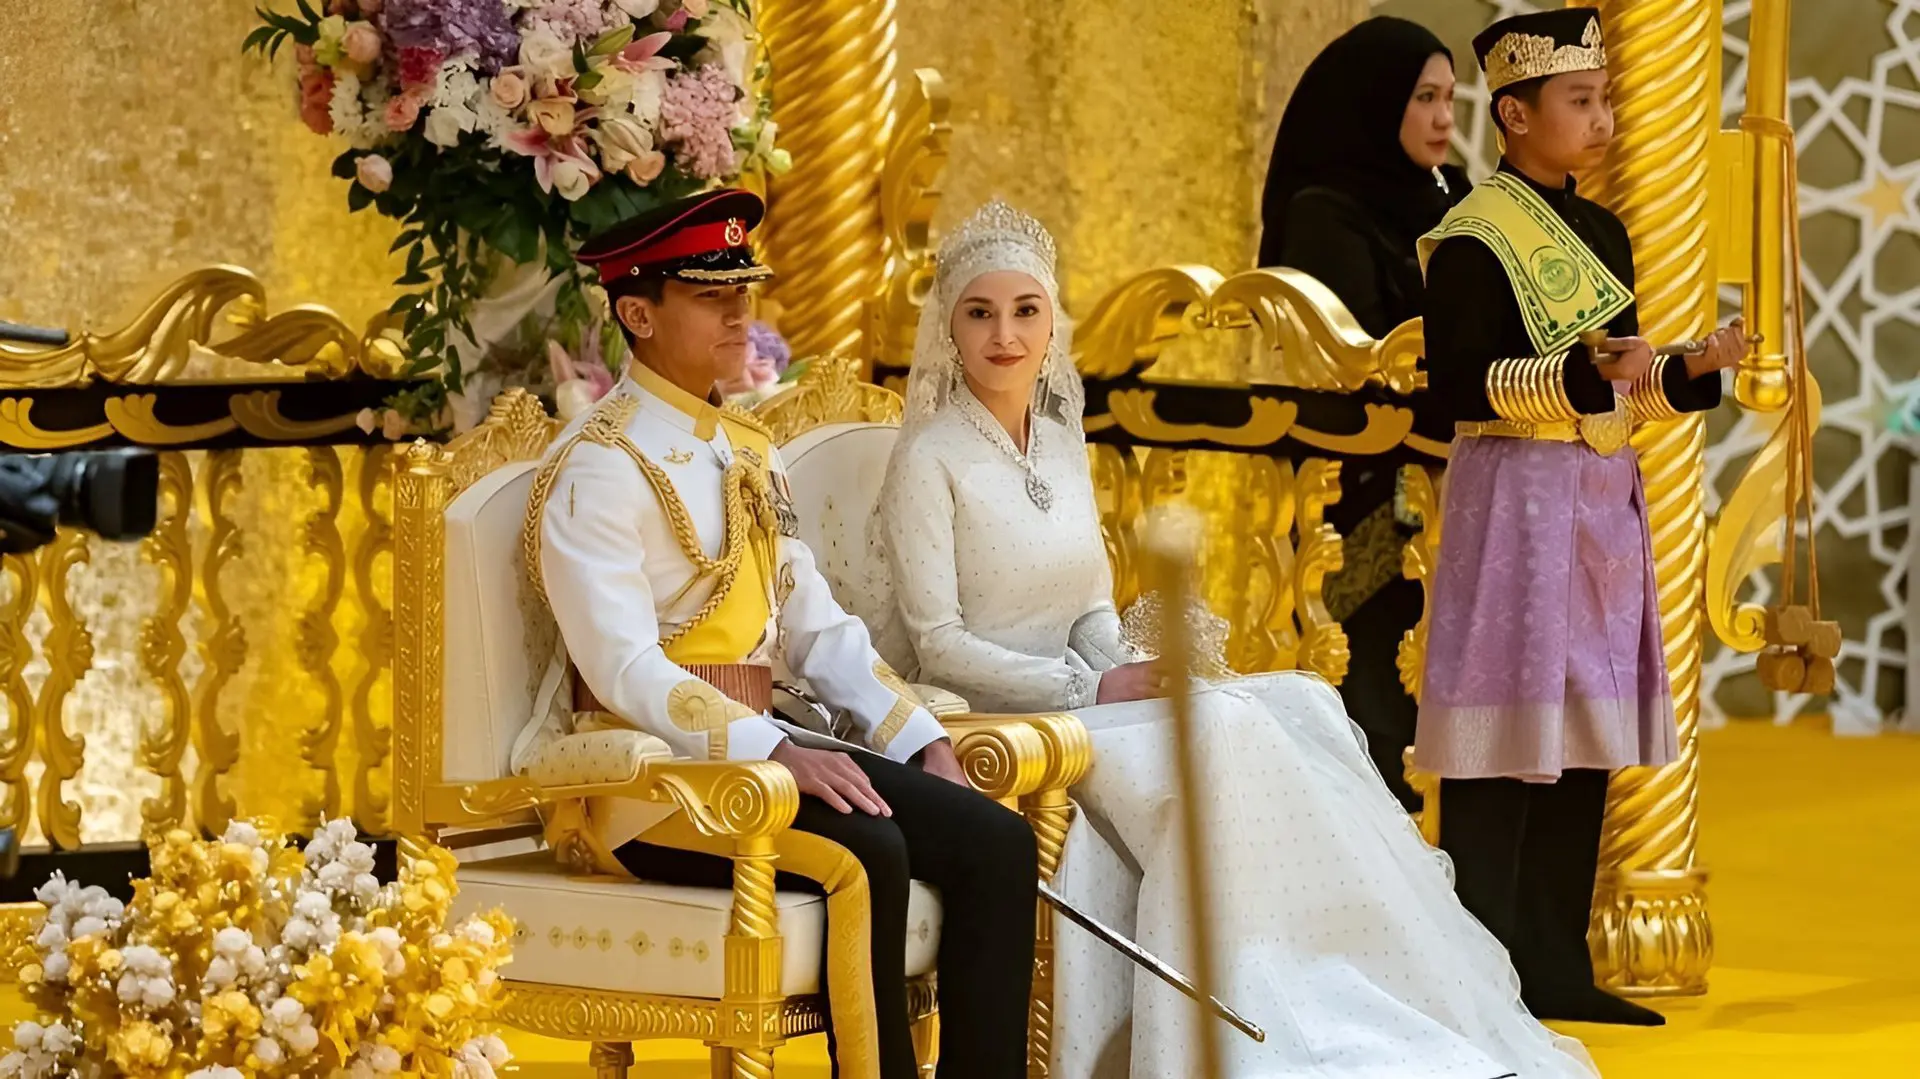 زهير مراد يصمم فستان زفاف عروس أمير بروناي (صور)